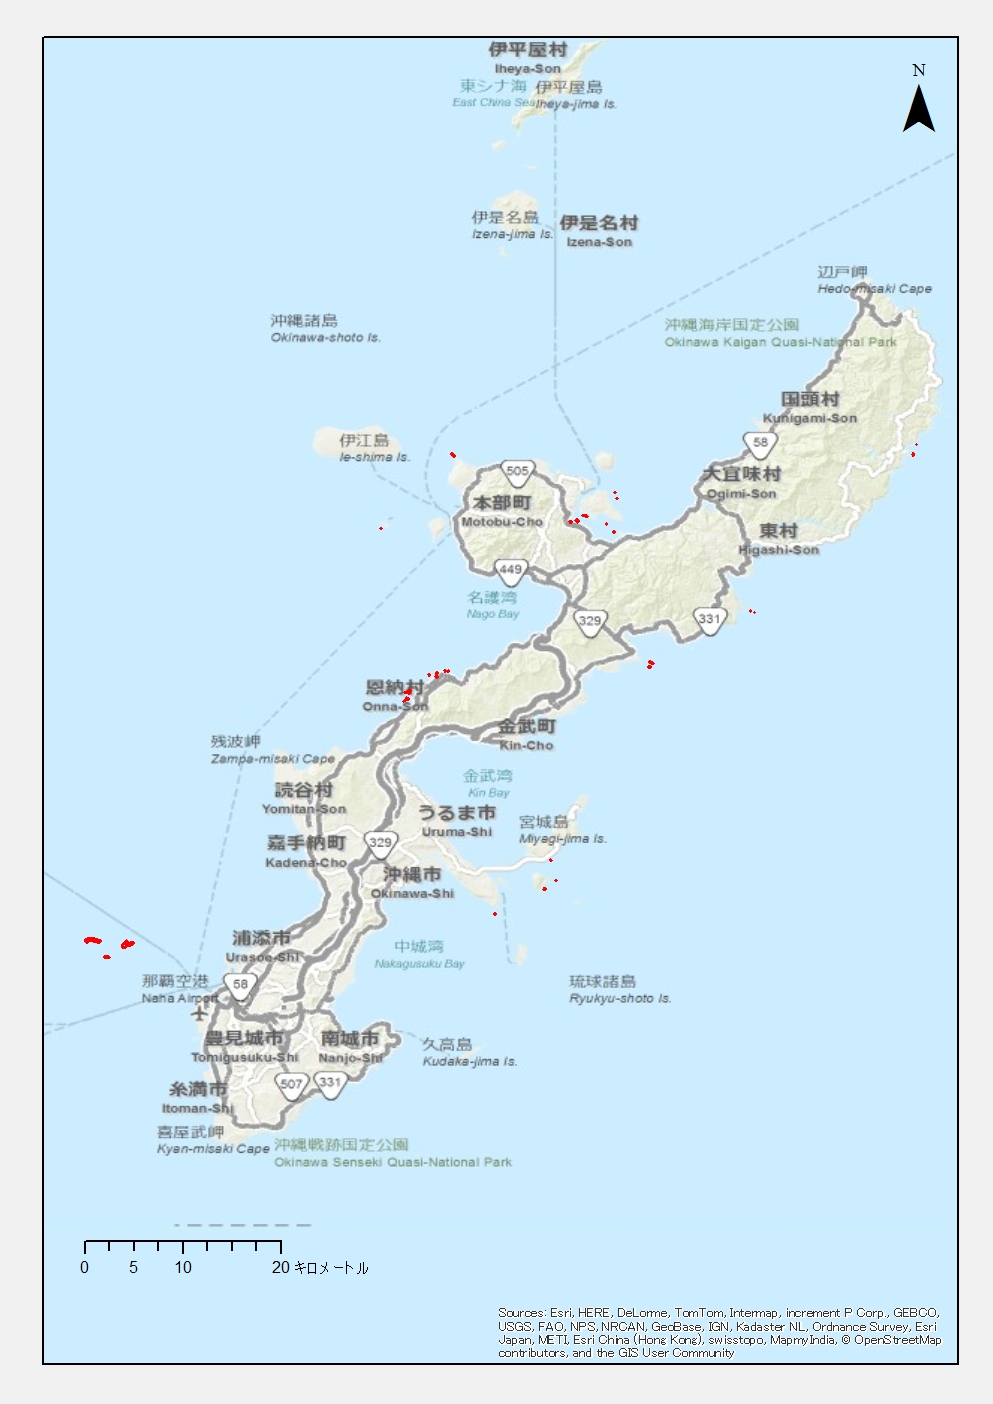 日本野鳥の会 Jp163 沖縄島沿岸離島 おきなわじまえんがんりとう